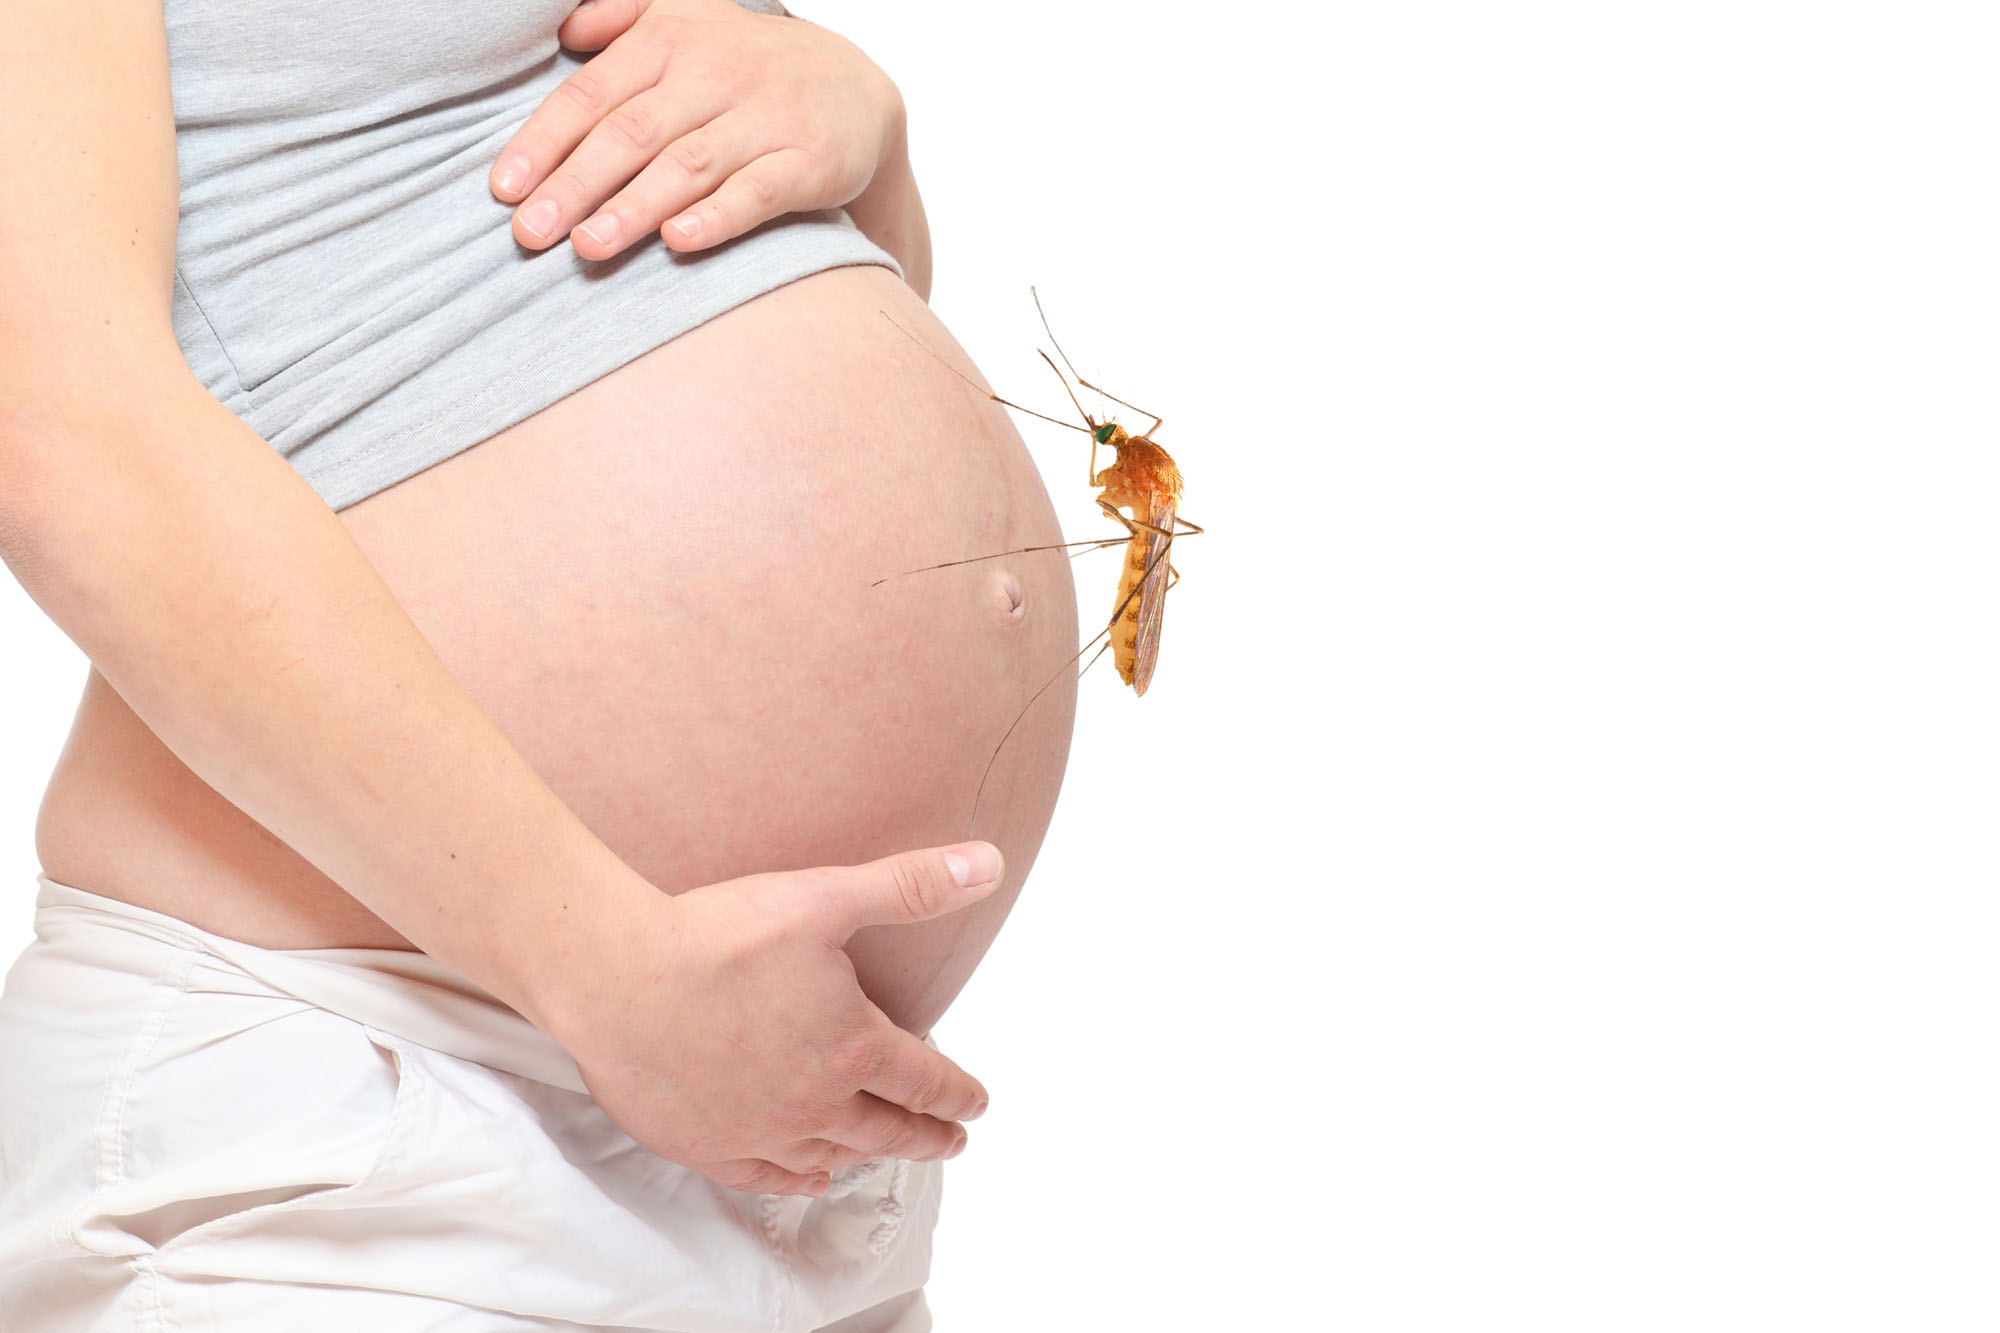 Schwangere mit Mücke auf dem Bauch